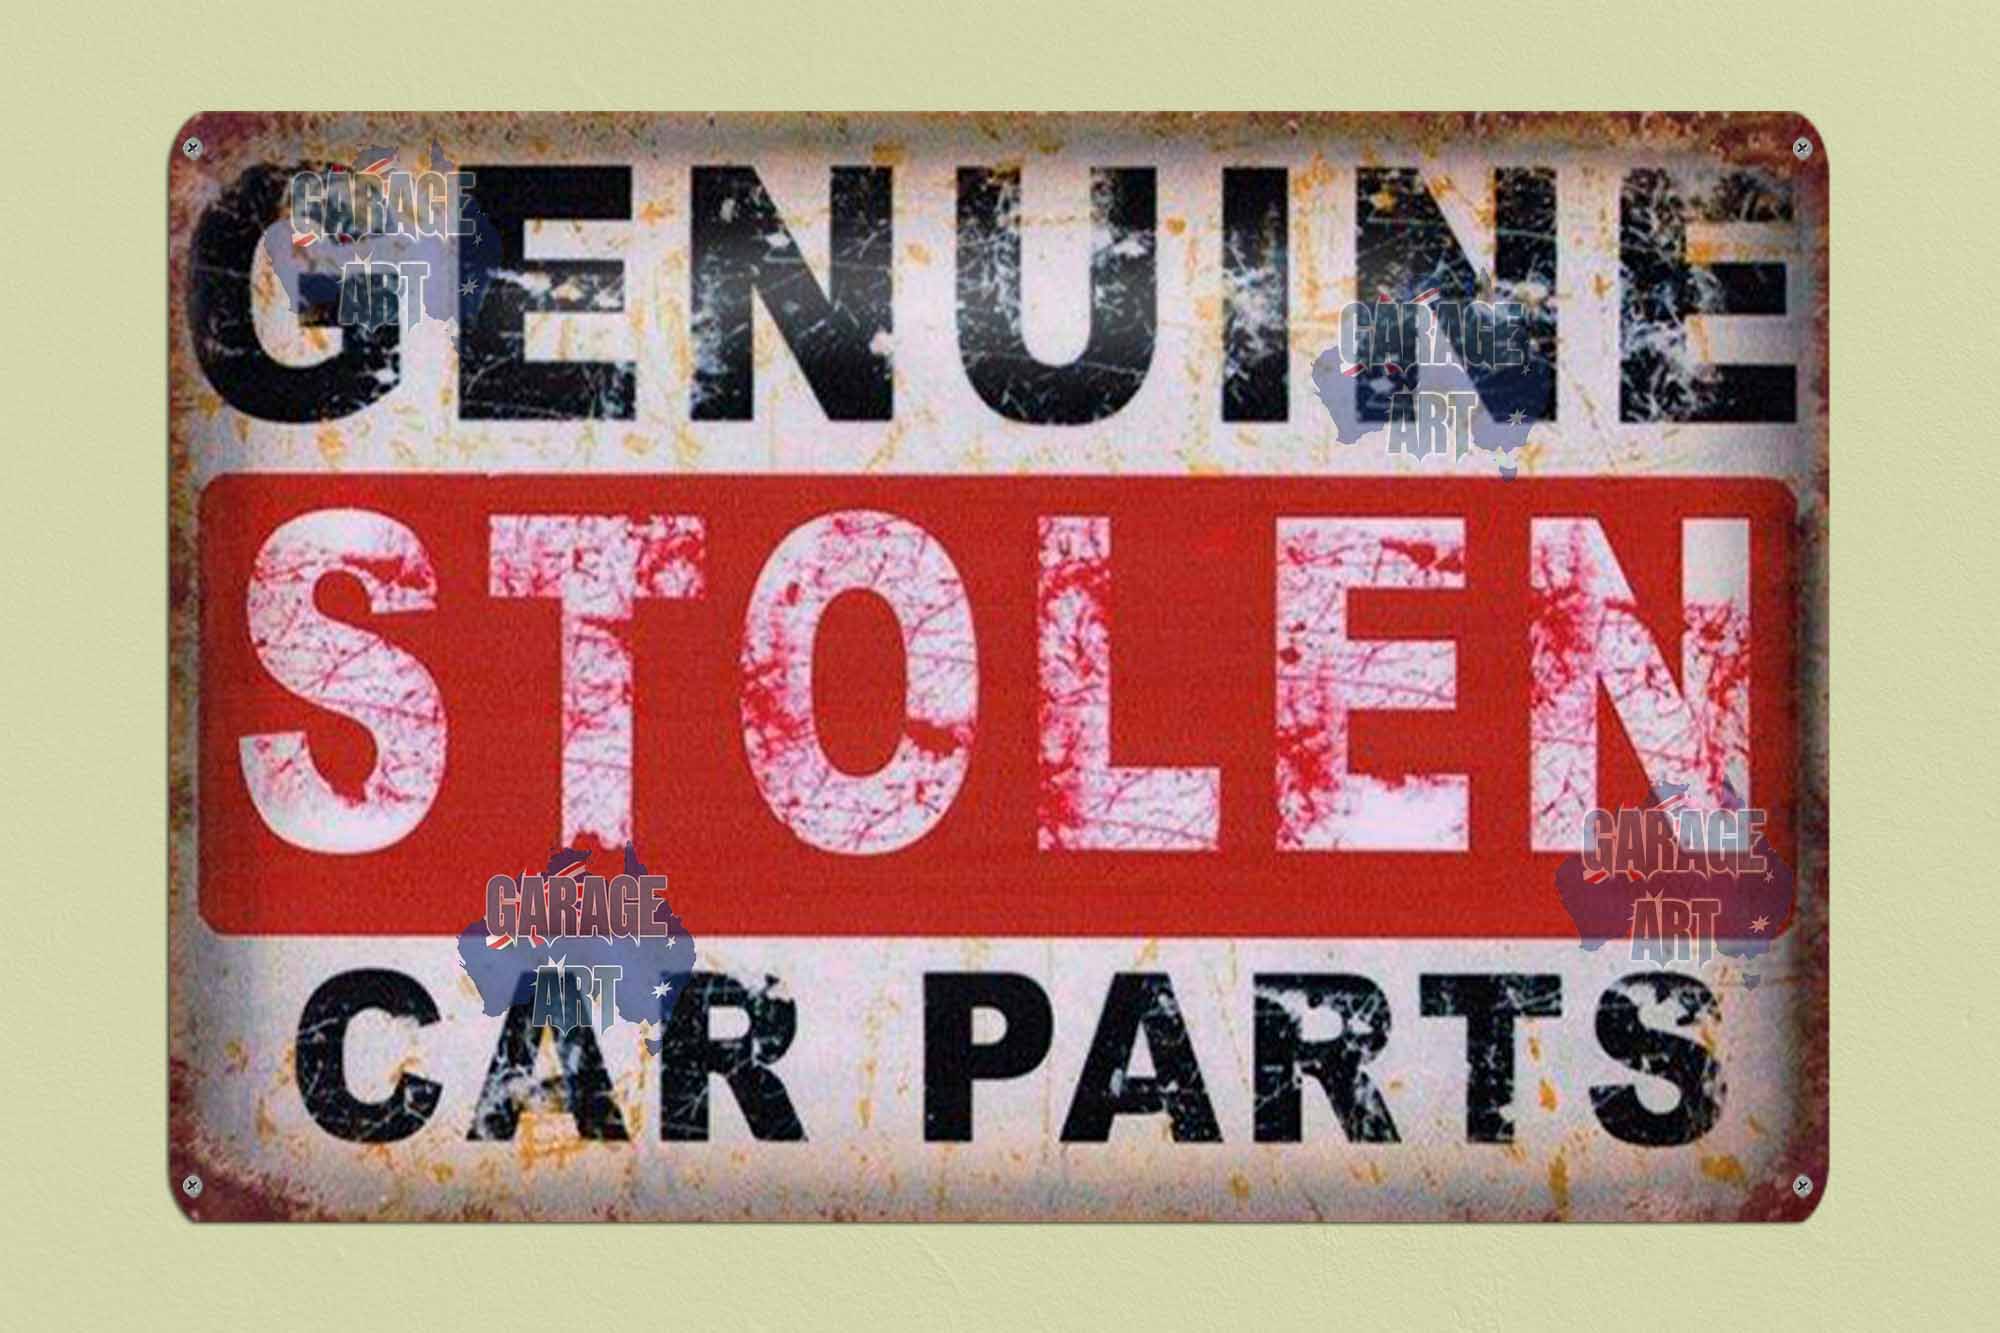 Genuine Stolen Parts 600mmx400mm Tin Sign freeshipping - garageartaustralia